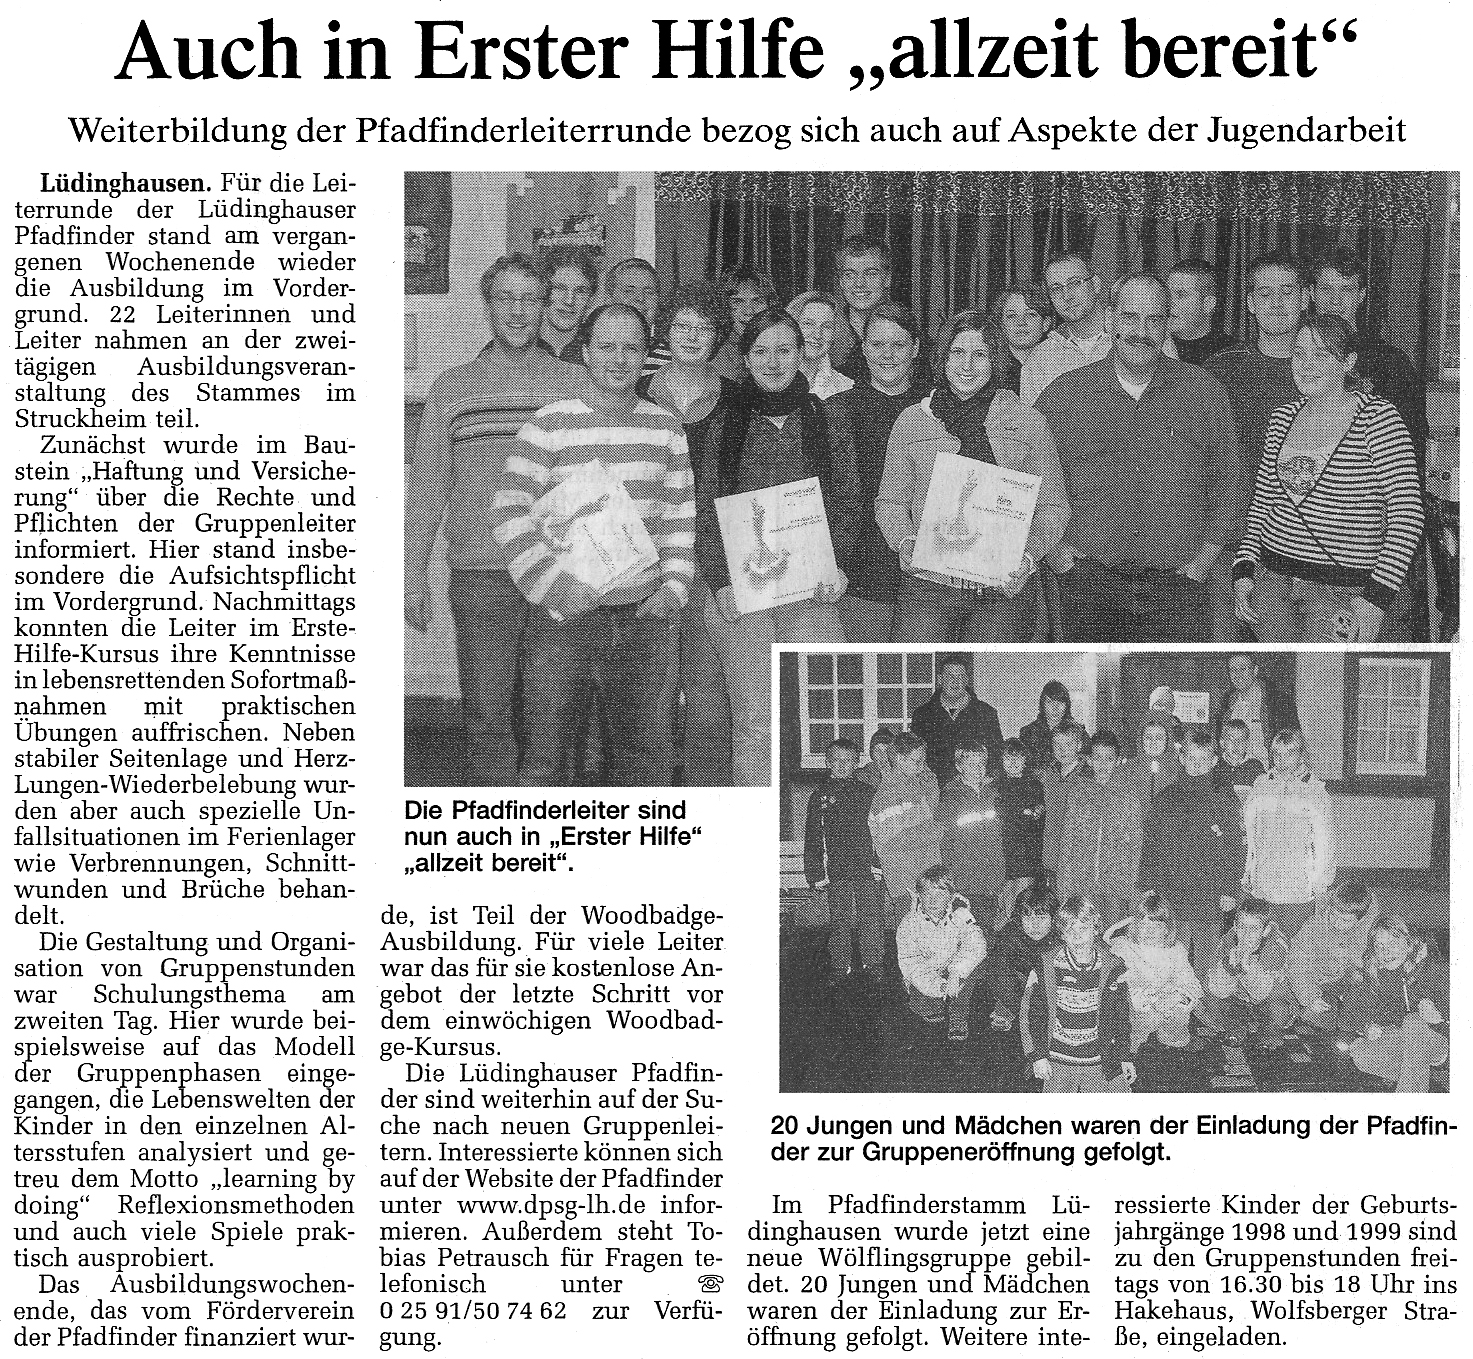 Zeitungsbericht Auch in Erster Hilfe allzeit bereit, WN 24.01.2008